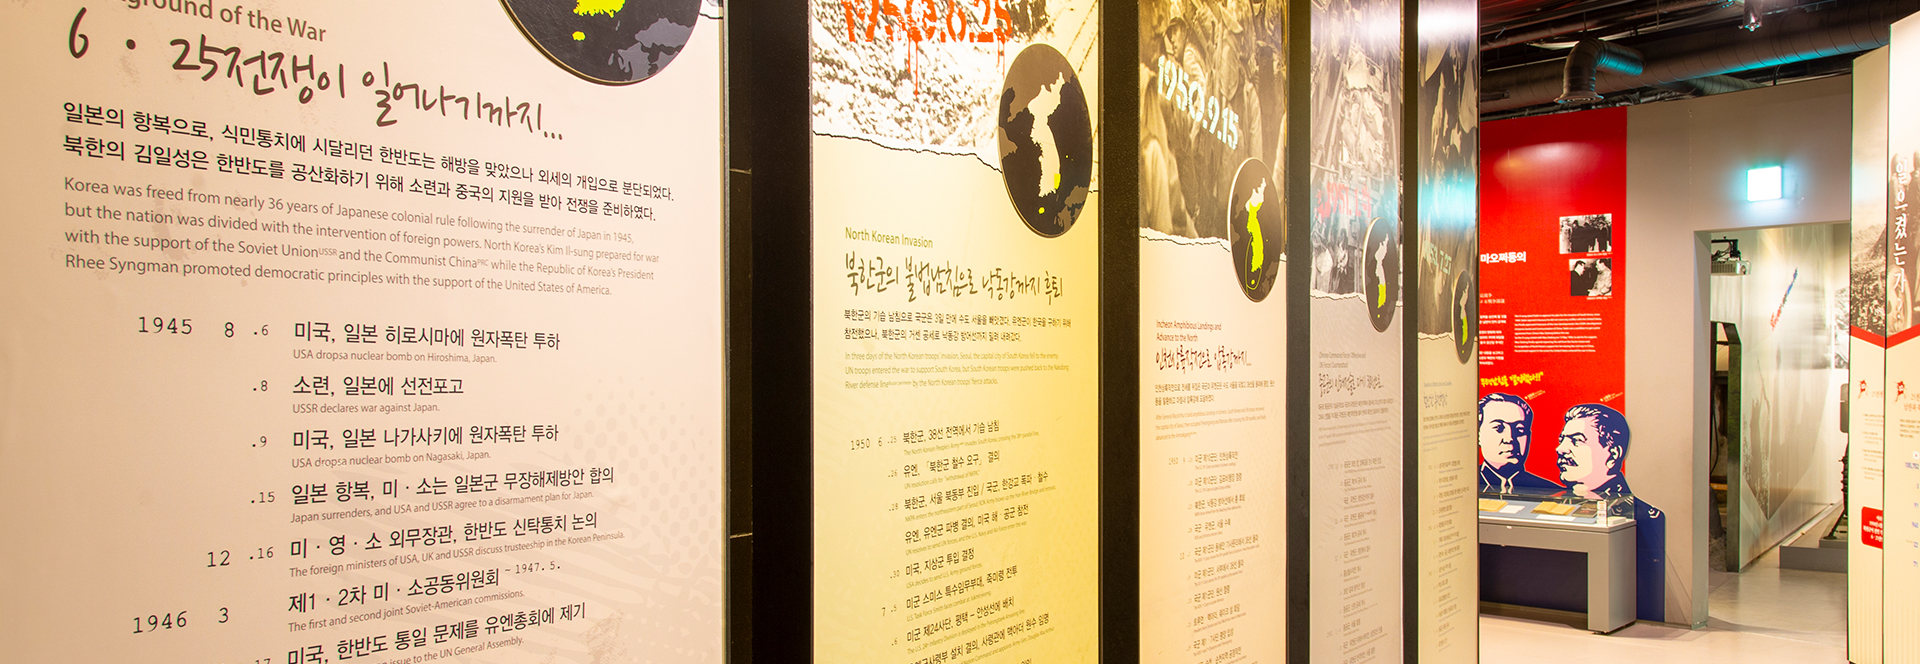 The War Memorial Of Korea > 展示> 常設展示> 韓国戦争室Ⅰ